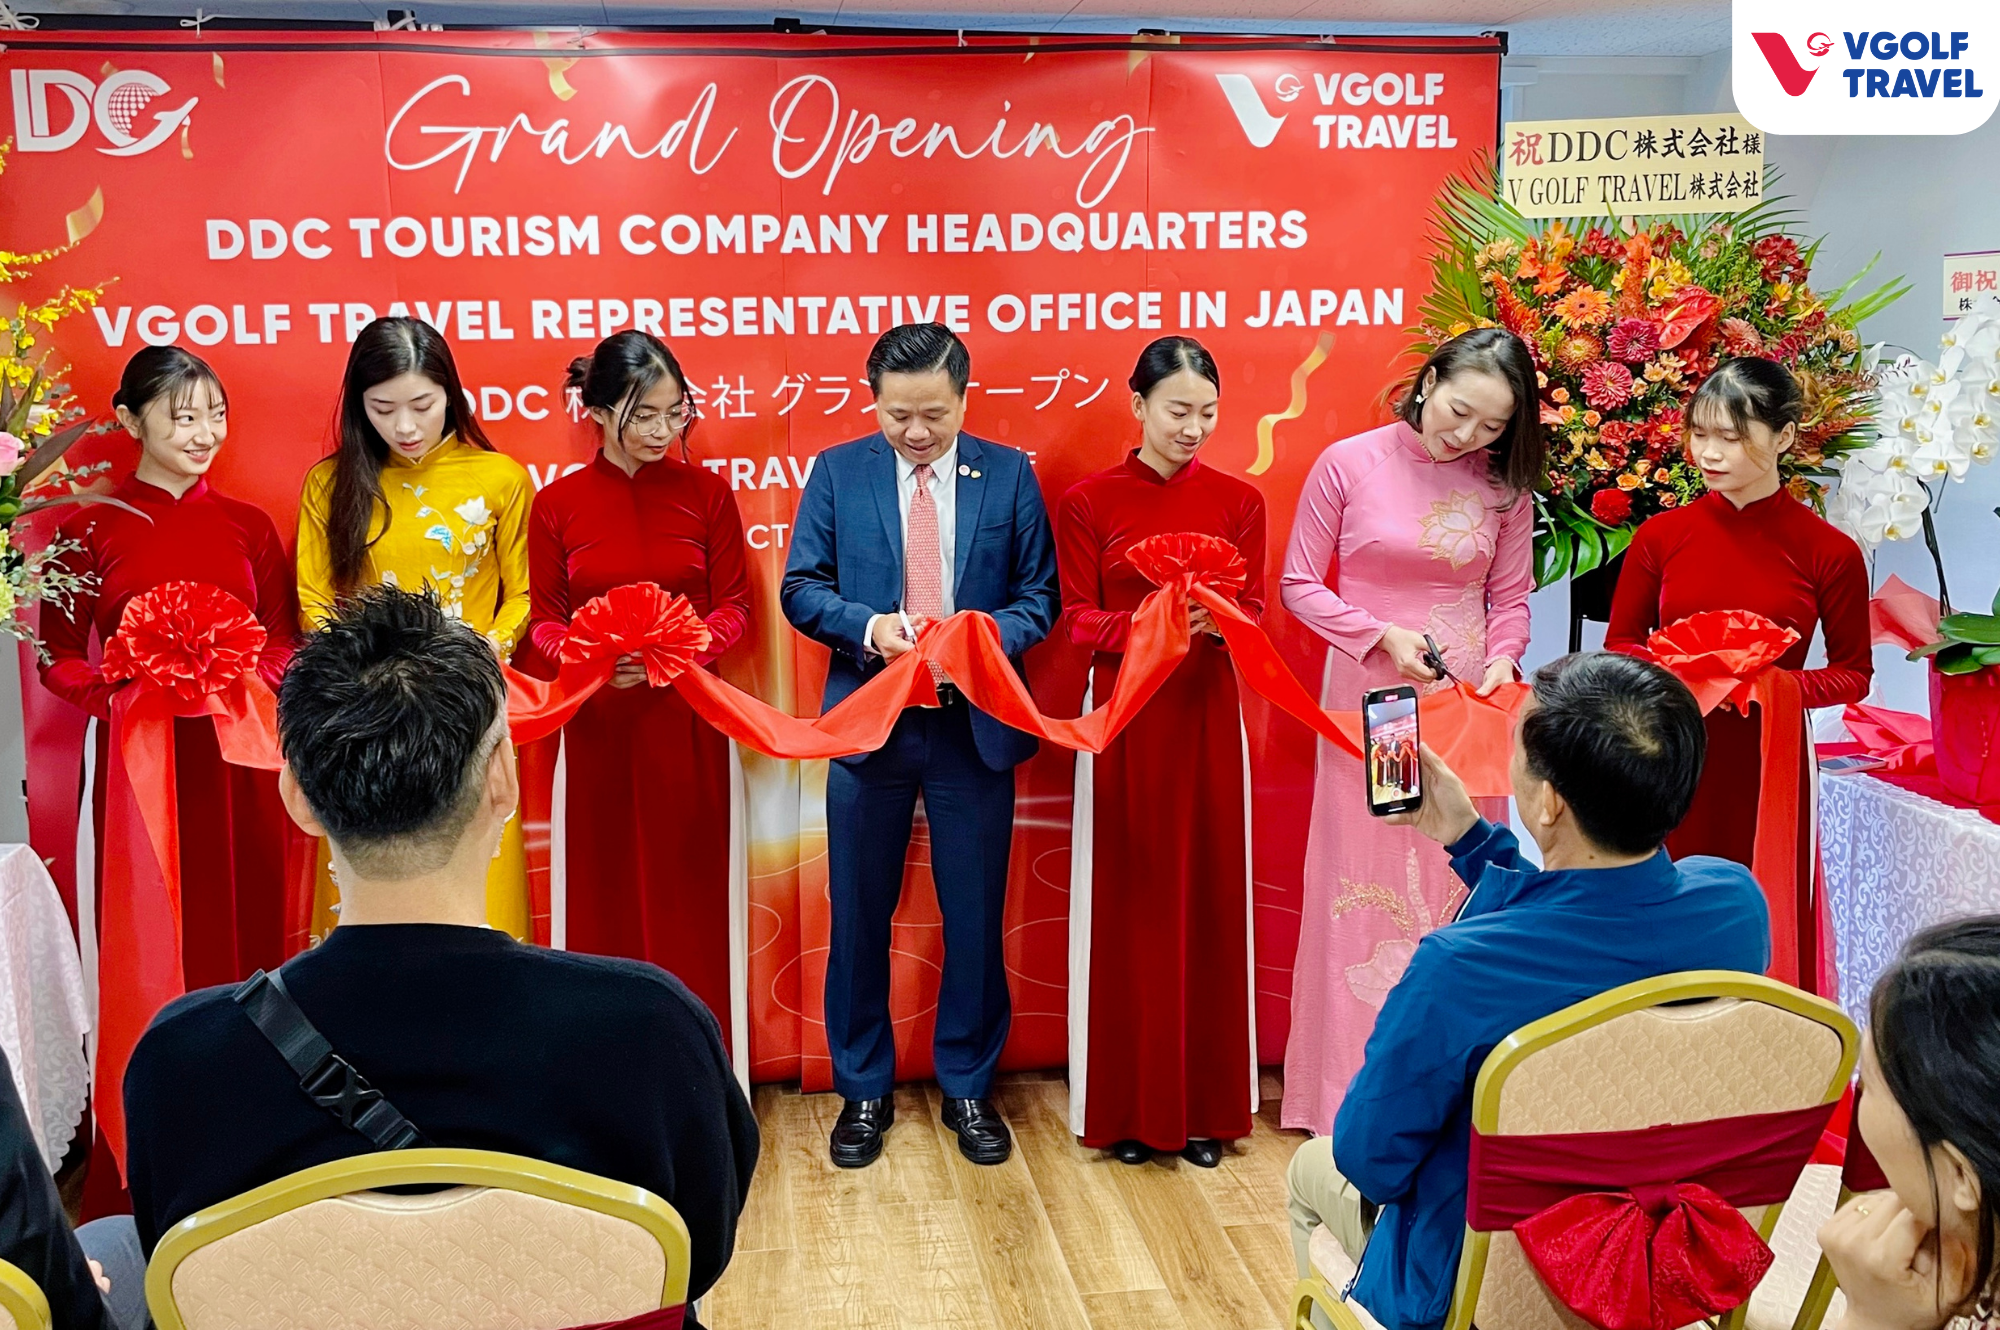 VGolf Travel khai trương văn phòng đại diện tại Nhật Bản